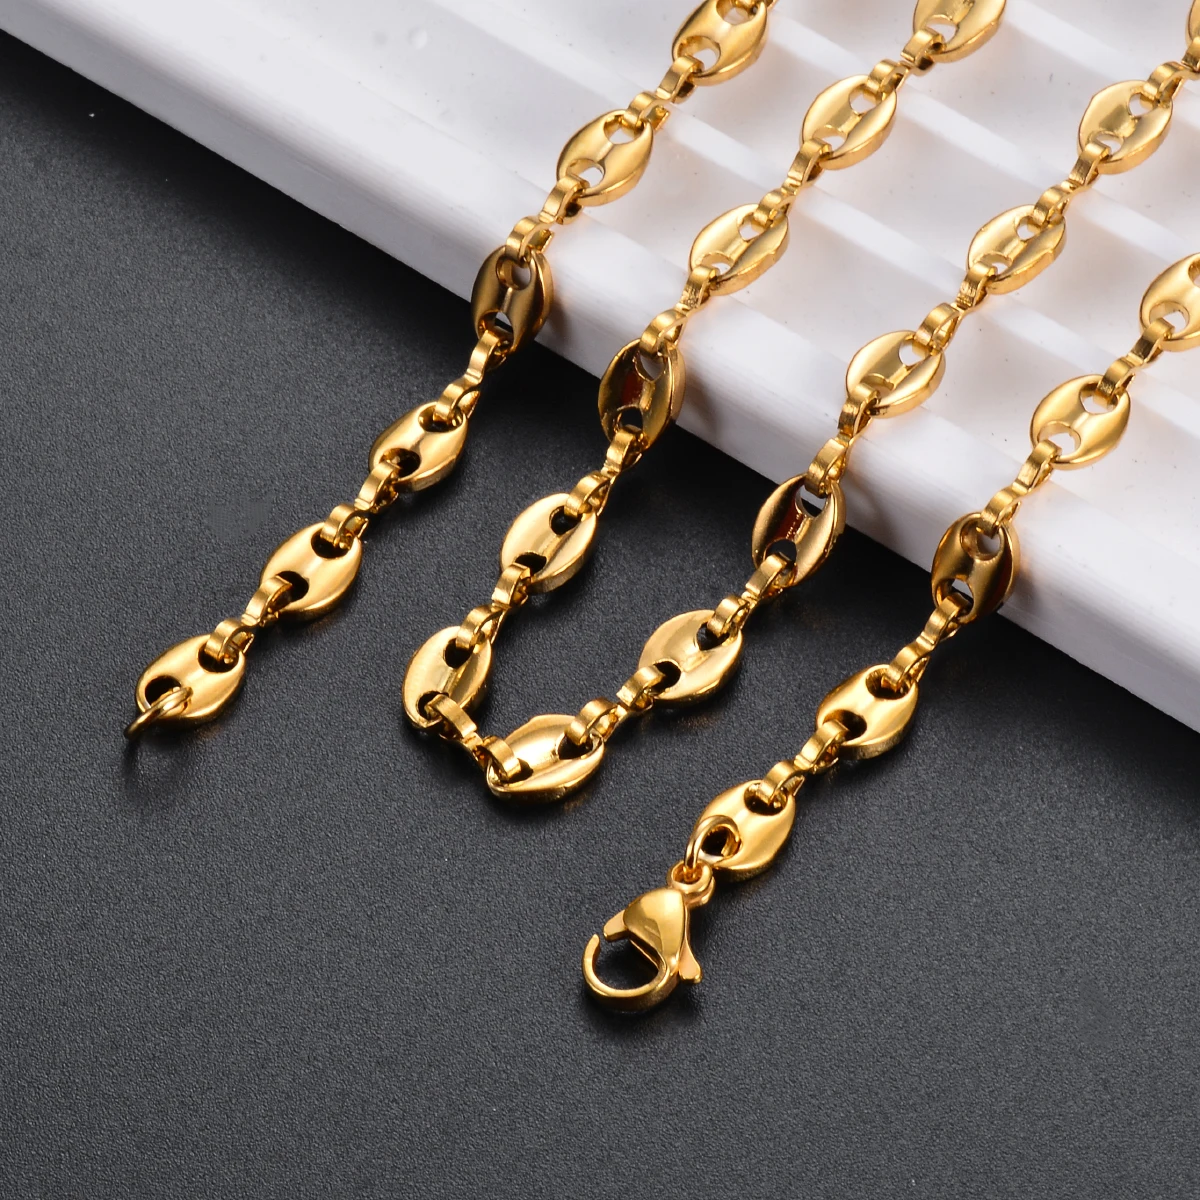 1 sztuk ze stali nierdzewnej ziarna kawy Link Chain 5MM naszyjniki dla kobiet mężczyzn liny Link Chain naszyjniki moda Hip Hop biżuteria